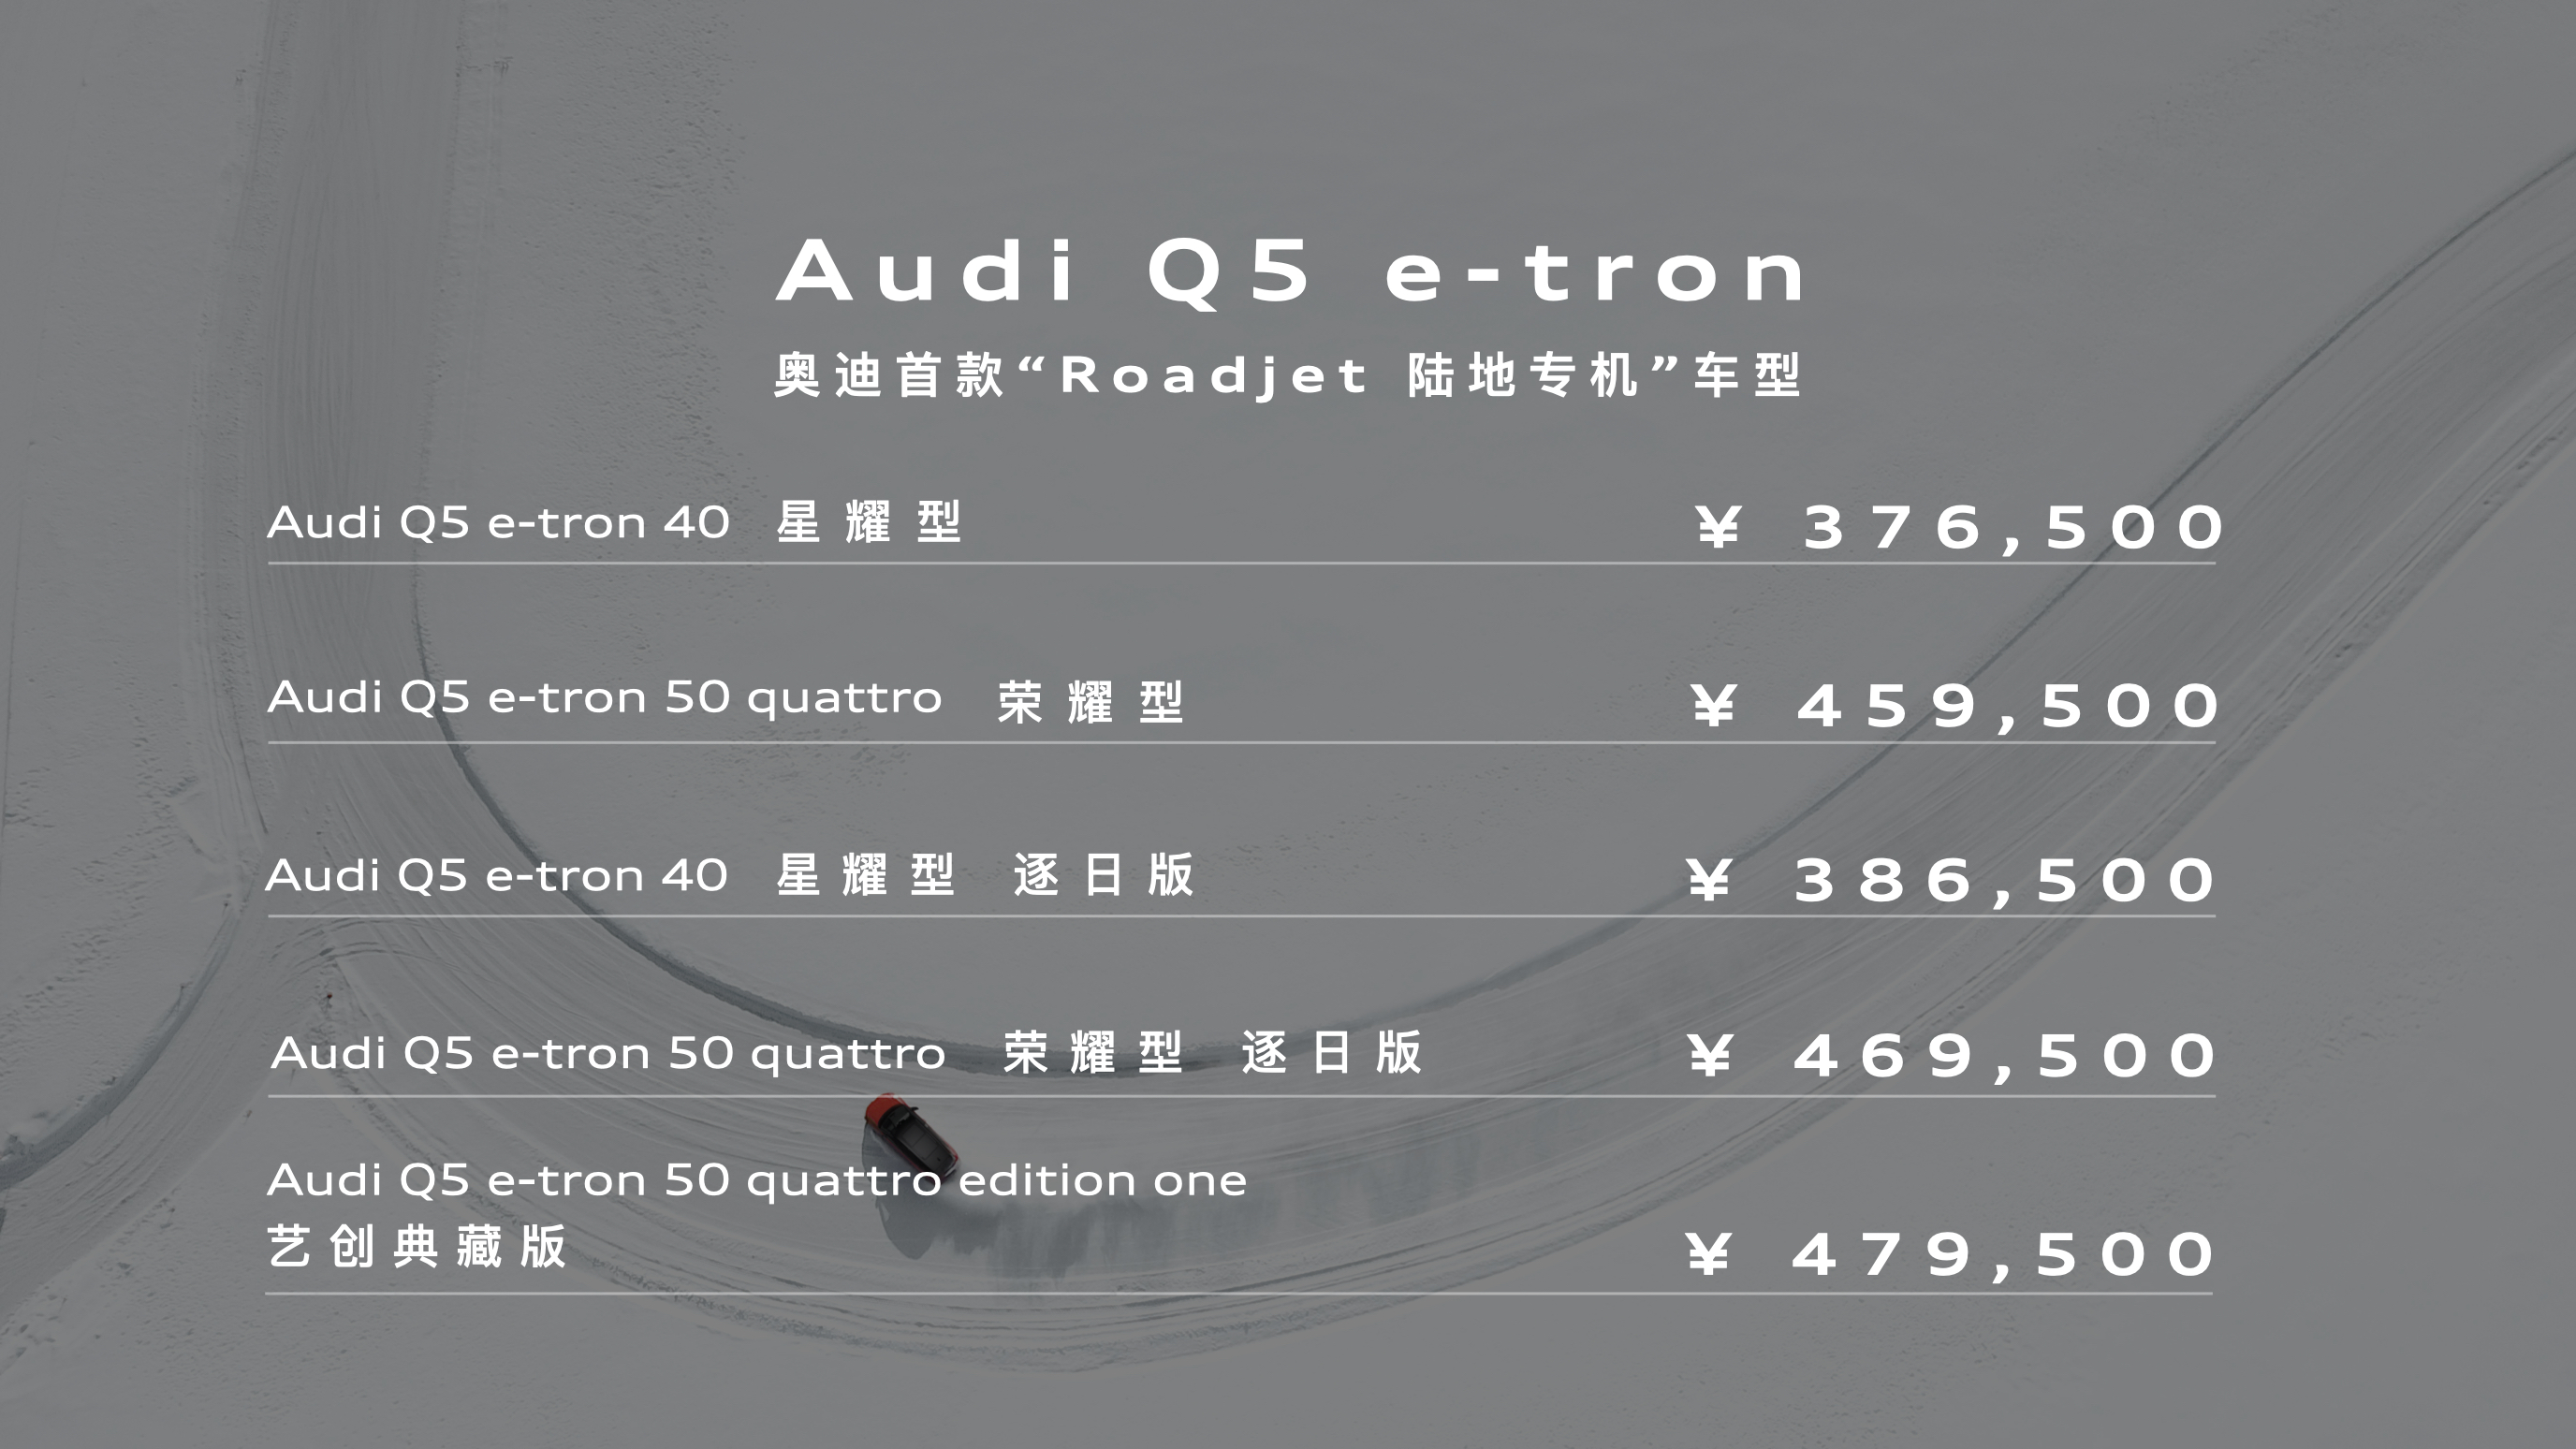 小小诚意难以解决大问题，上汽奥迪Q5 e-tron正式售价37.65万元起